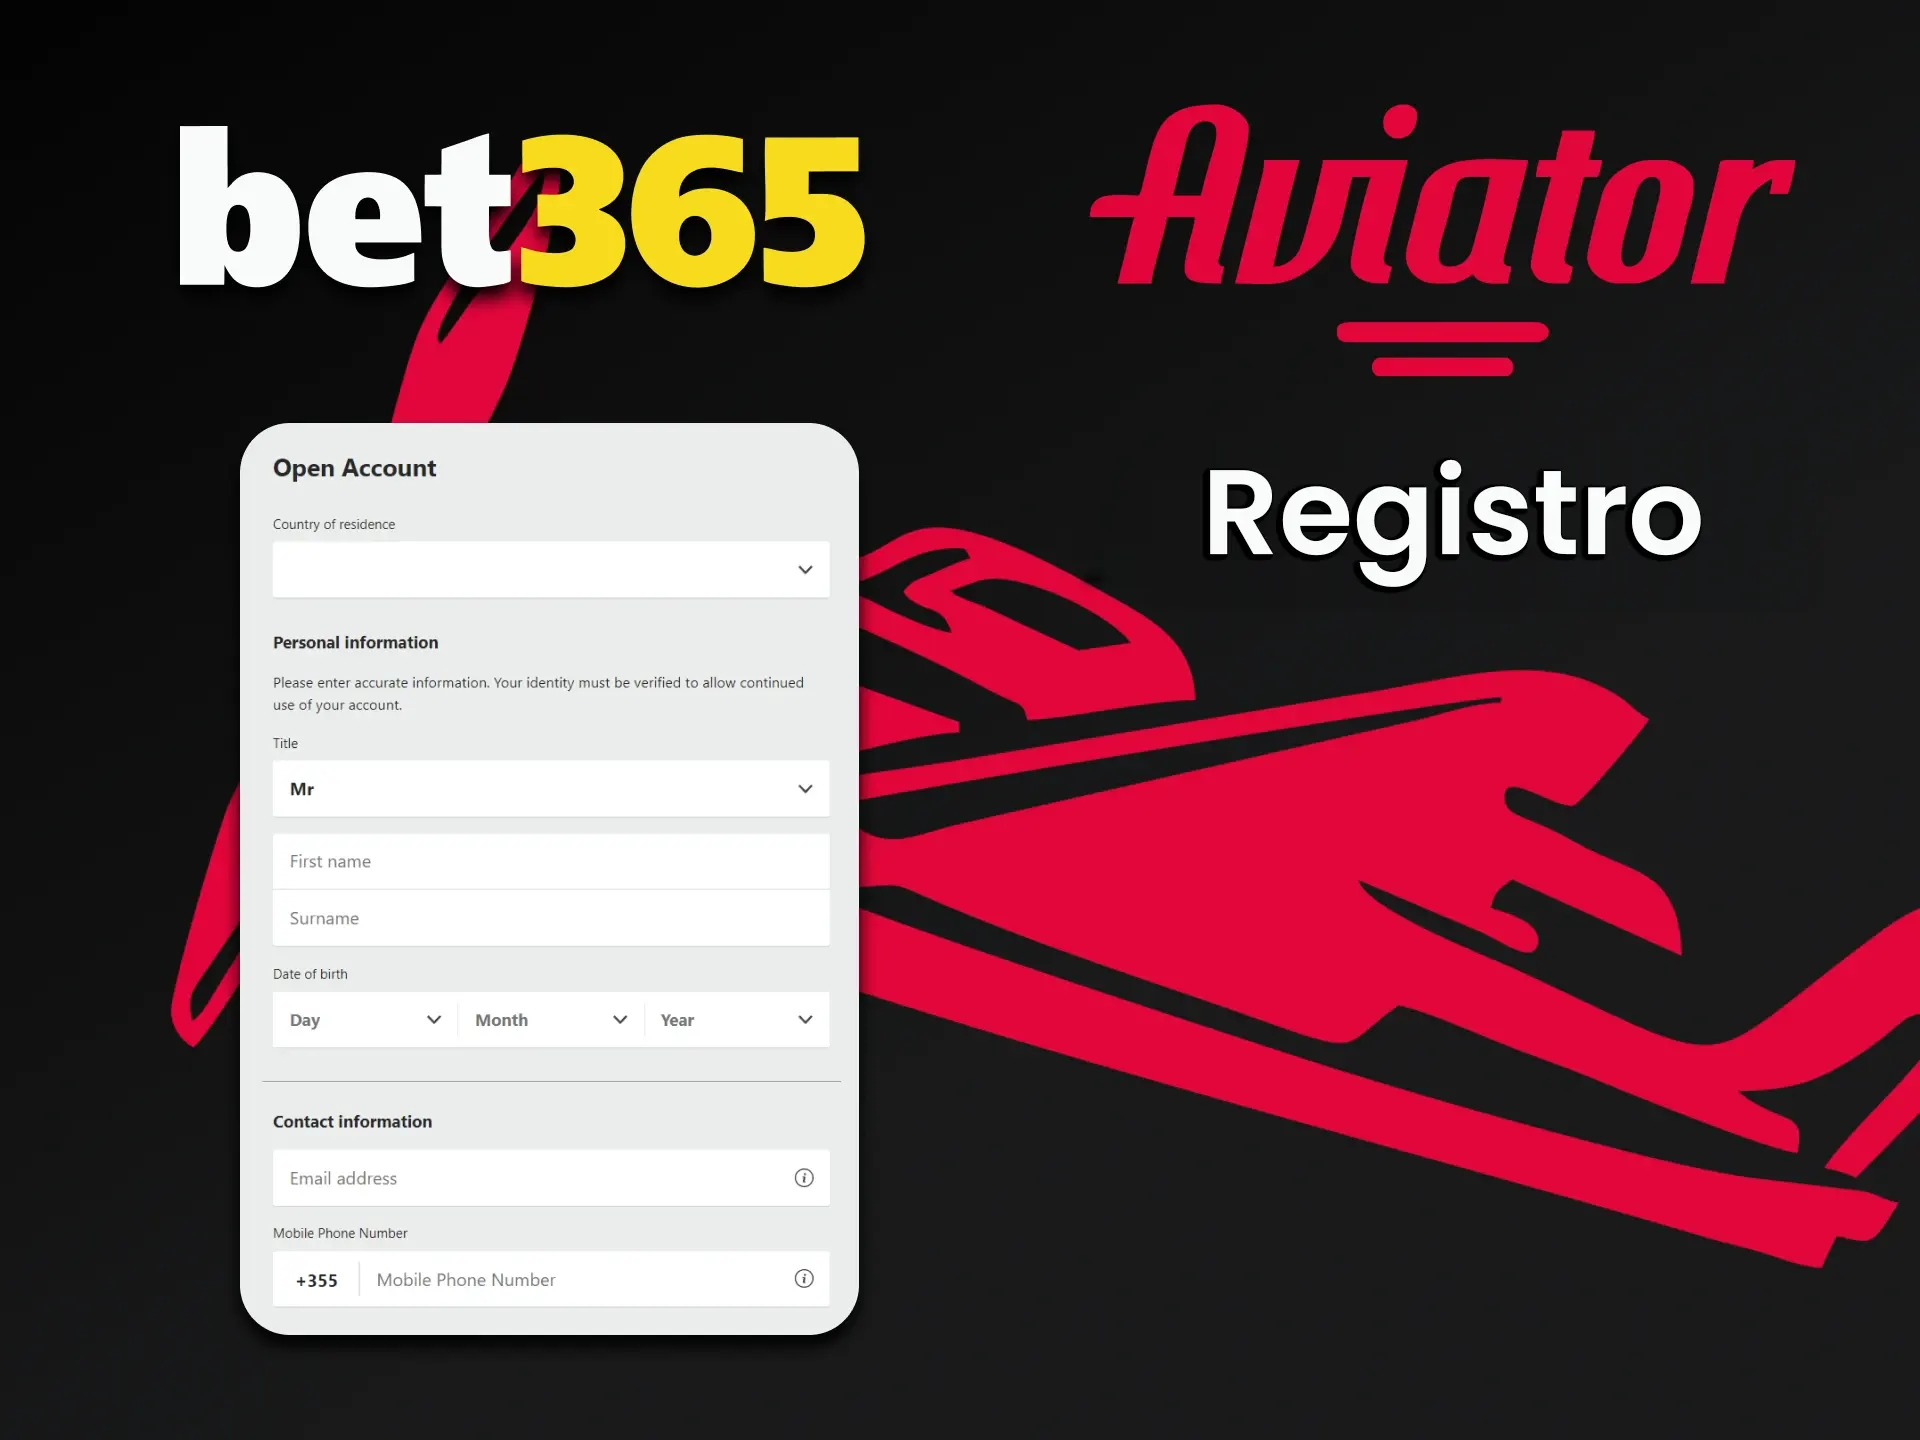 Registre-se na Bet365 para jogar Aviator.